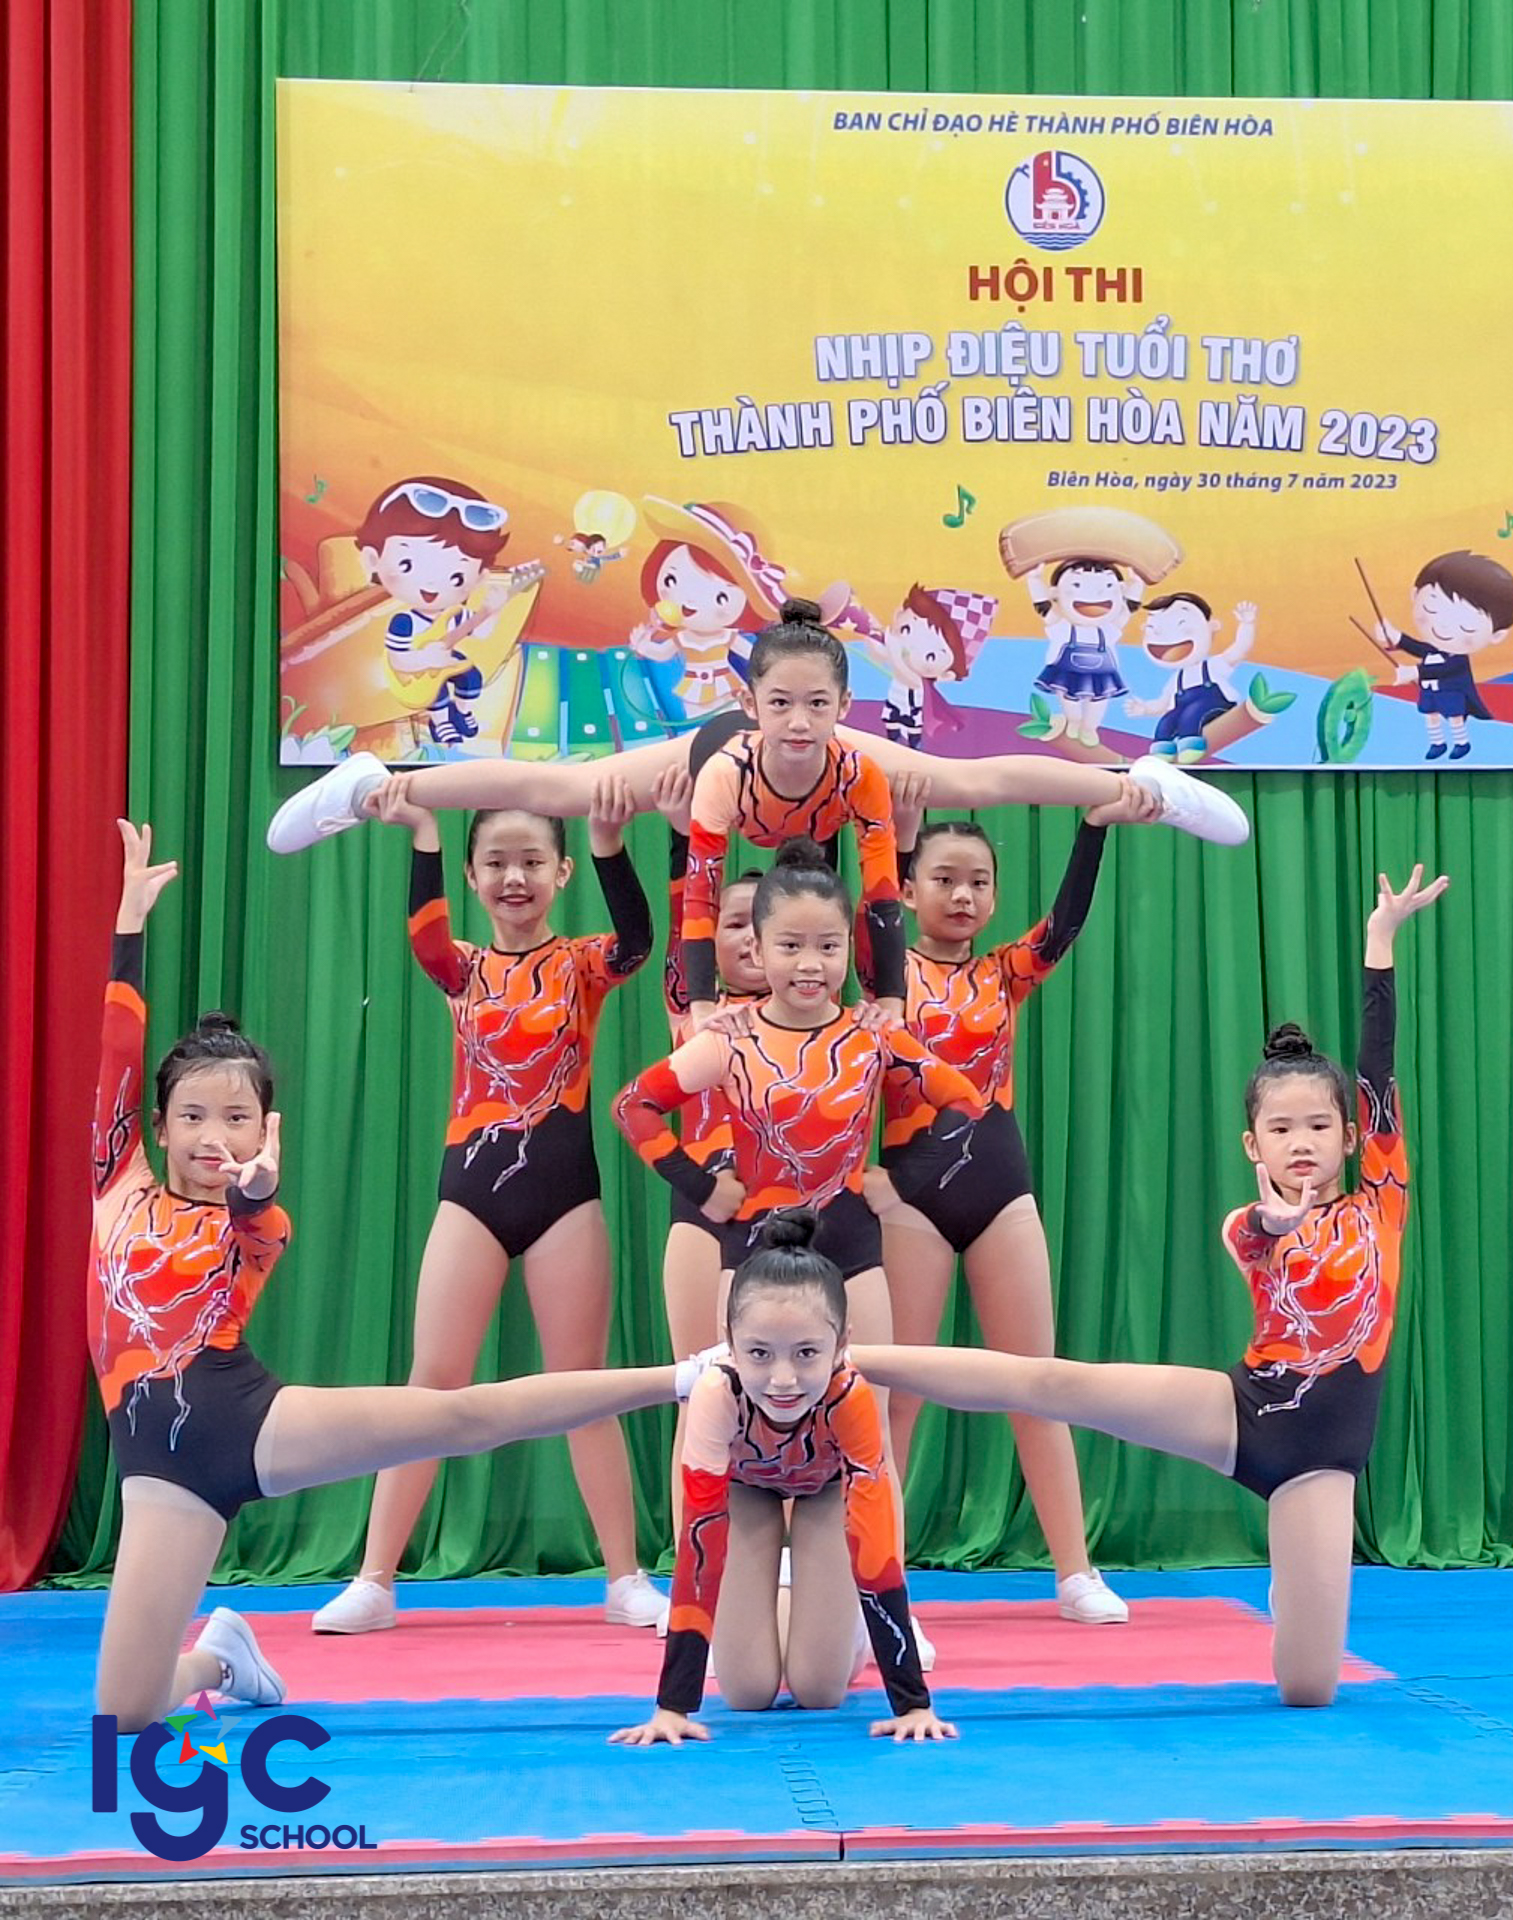 Hội thi Nhịp điệu tuổi thơ thành phố Biên Hoà lần thứ IX năm 2023.